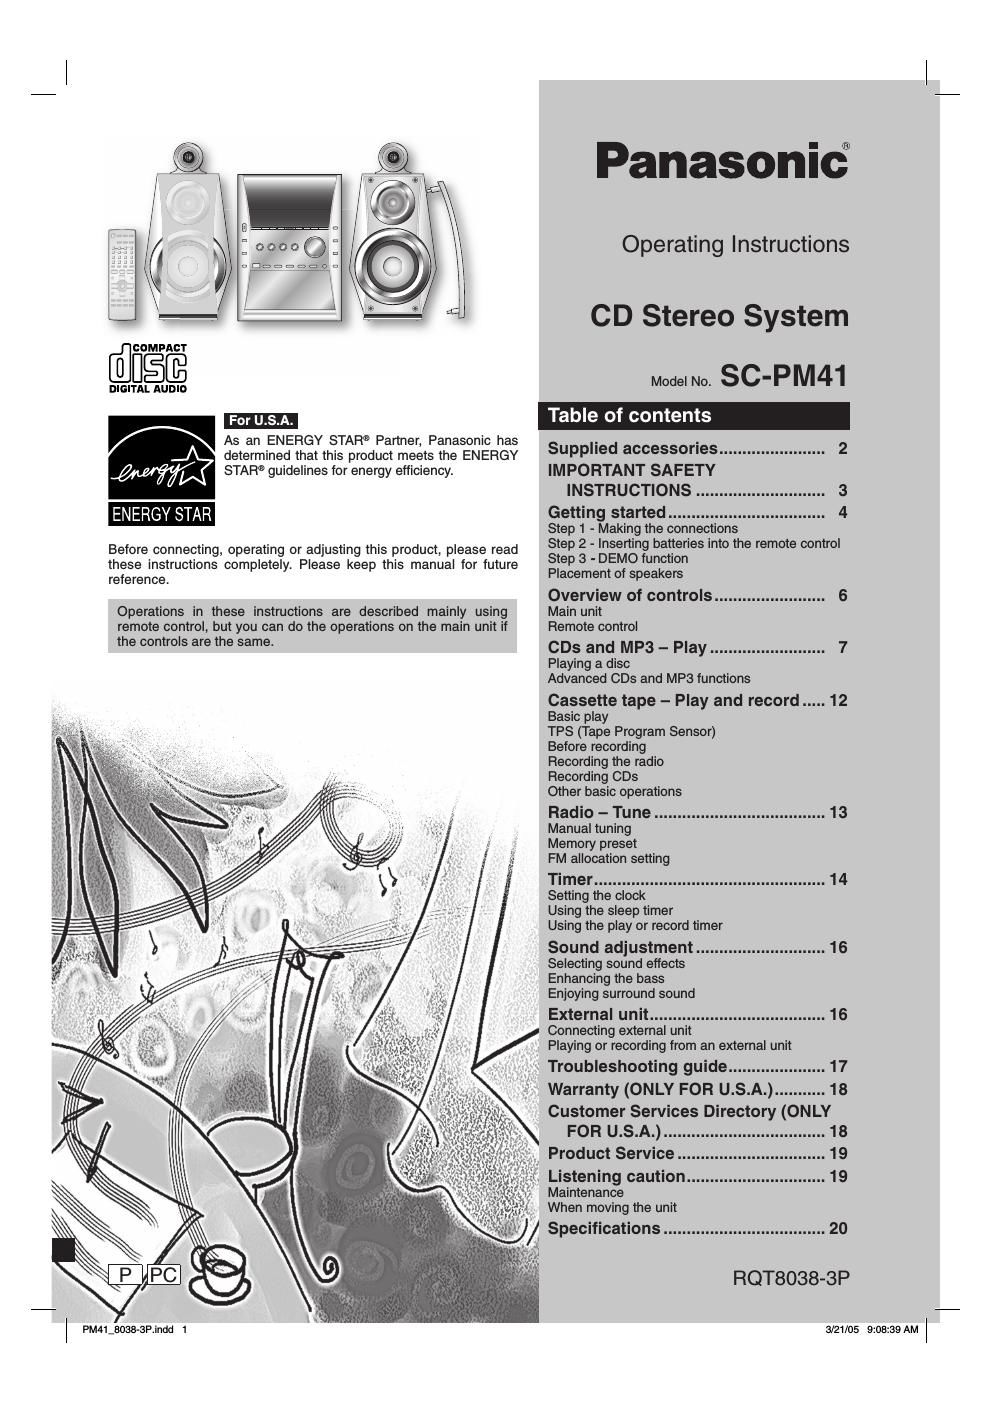 panasonic sc pm 41 owners manual